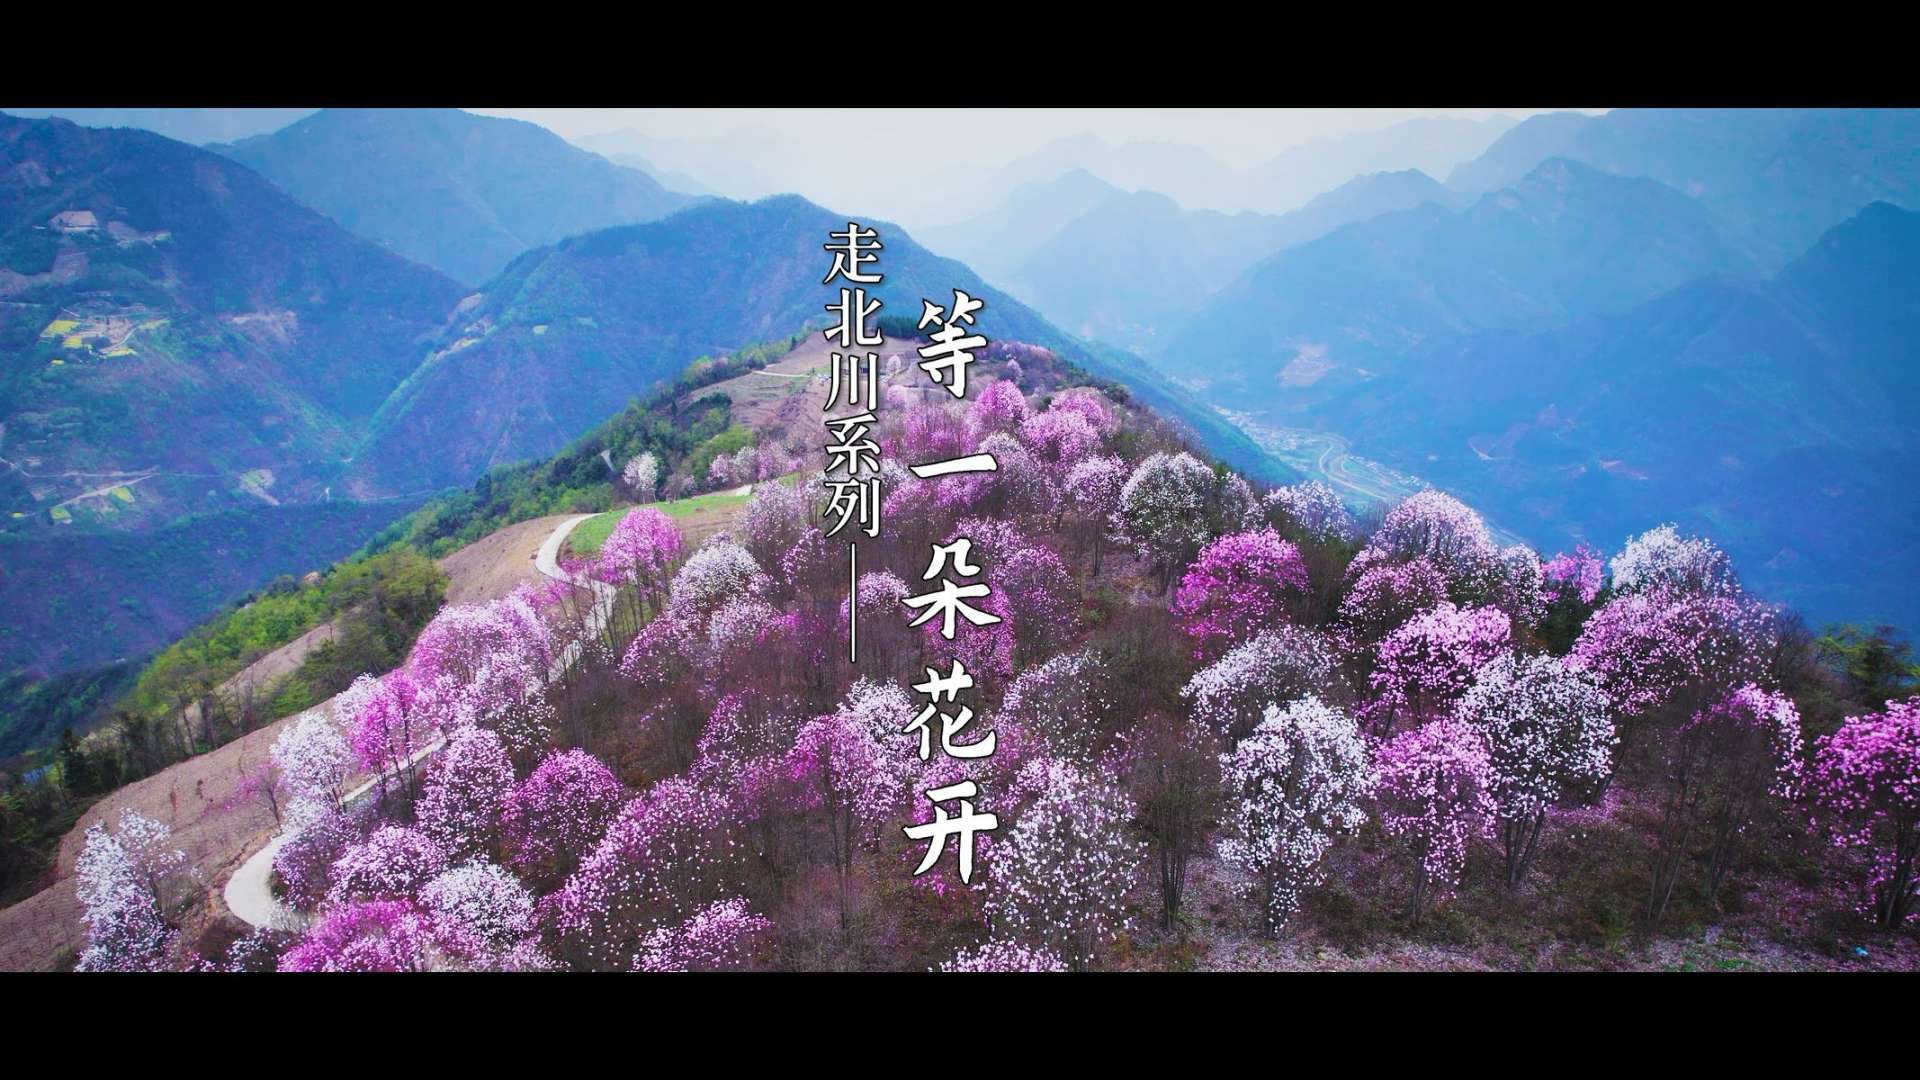 回到家乡北川两年，也是时候拍一个视频送给自己，《等一朵花开》